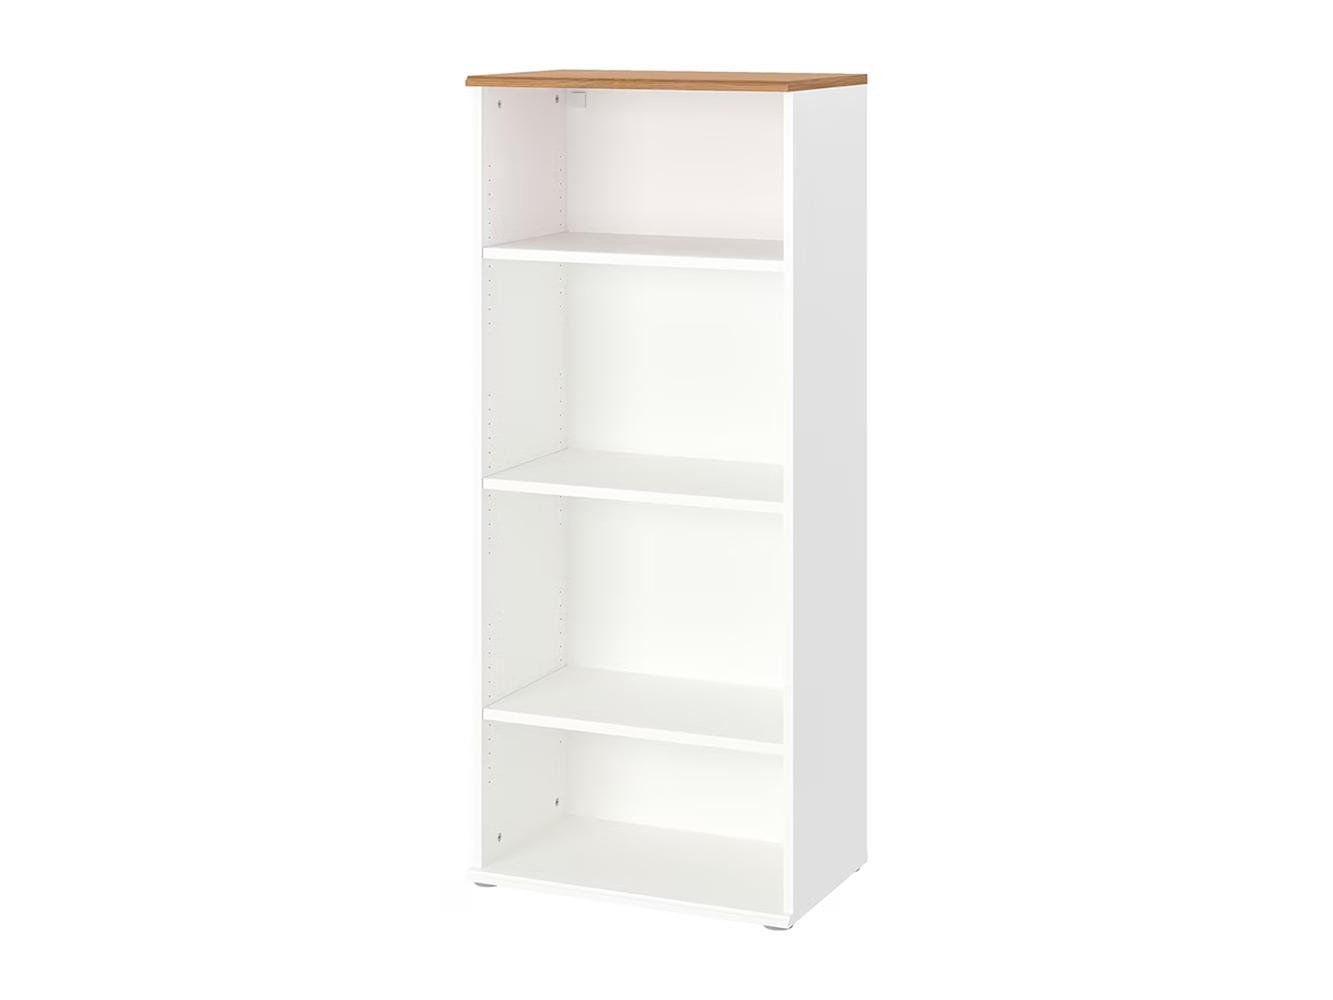 Скрувби 113 white ИКЕА (IKEA) изображение товара